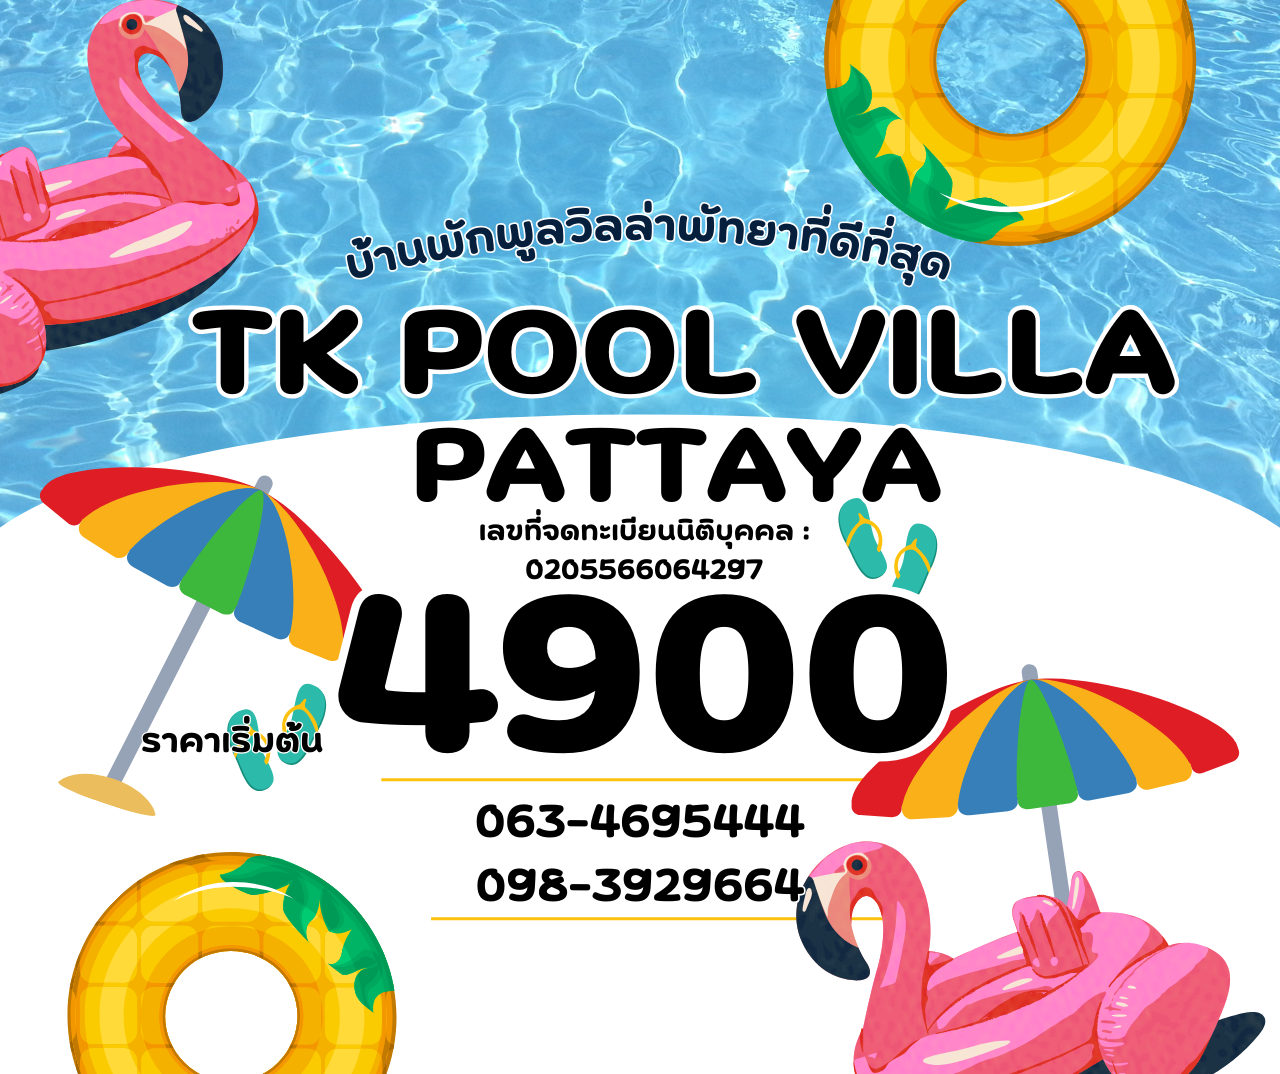 TK Pool Villa Pattaya